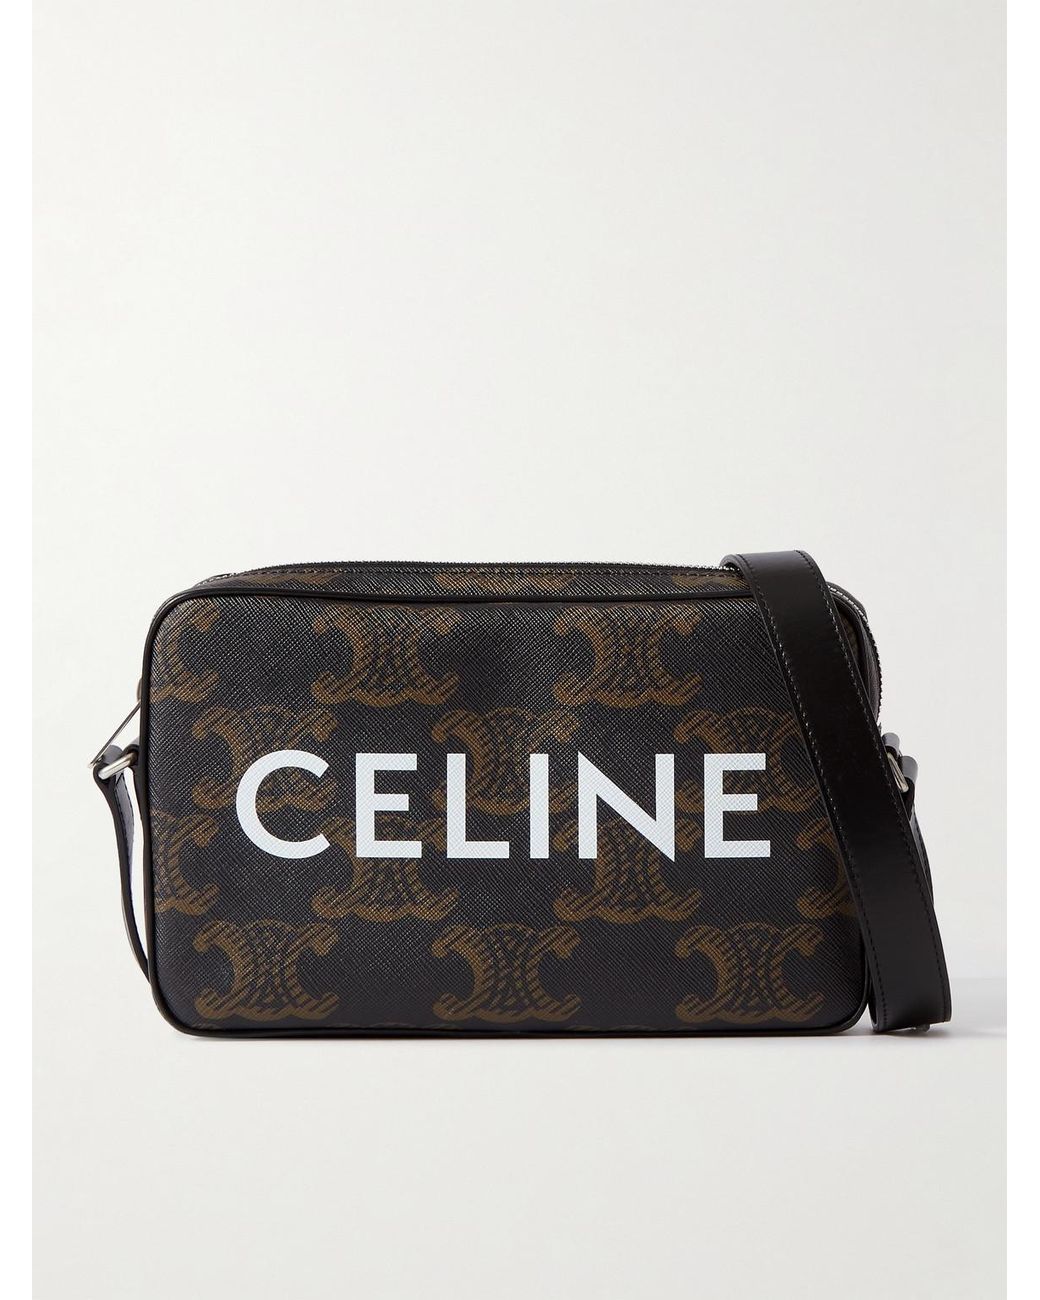 CELINE HOMME Triomphe Leather-Trimmed Logo-Print Coated-Canvas Messenger Bag  for Men